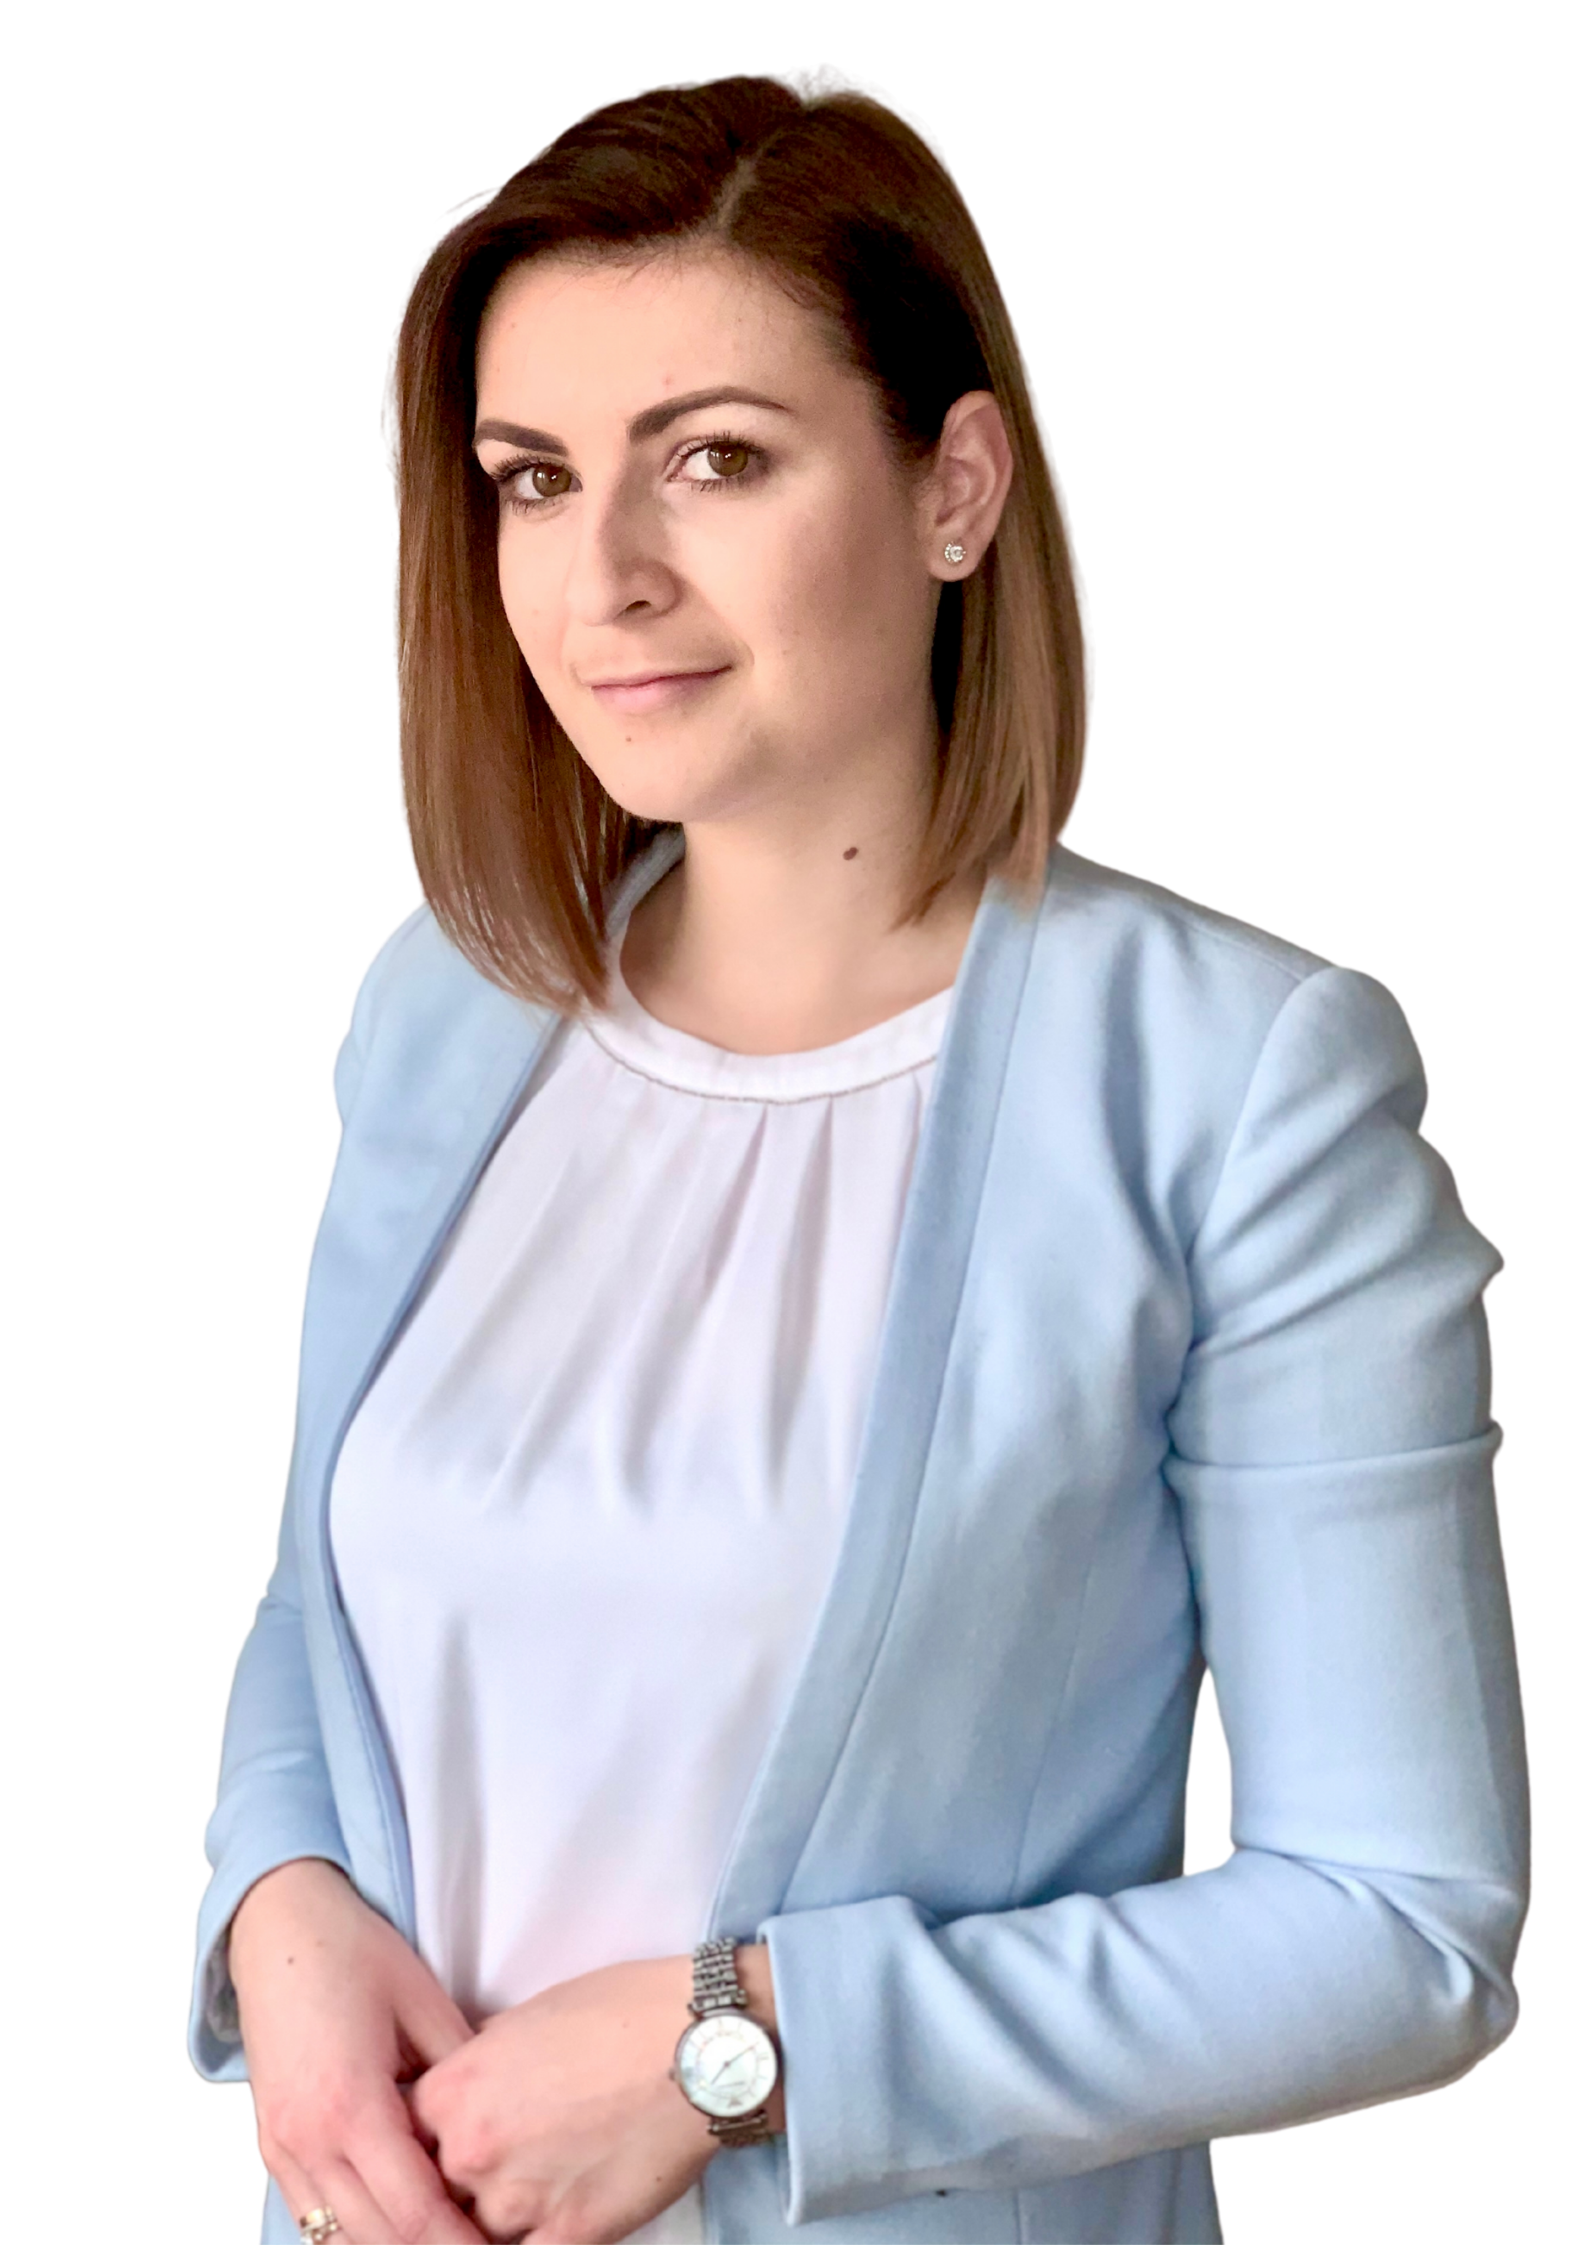 mgr Wioletta Bojanowska